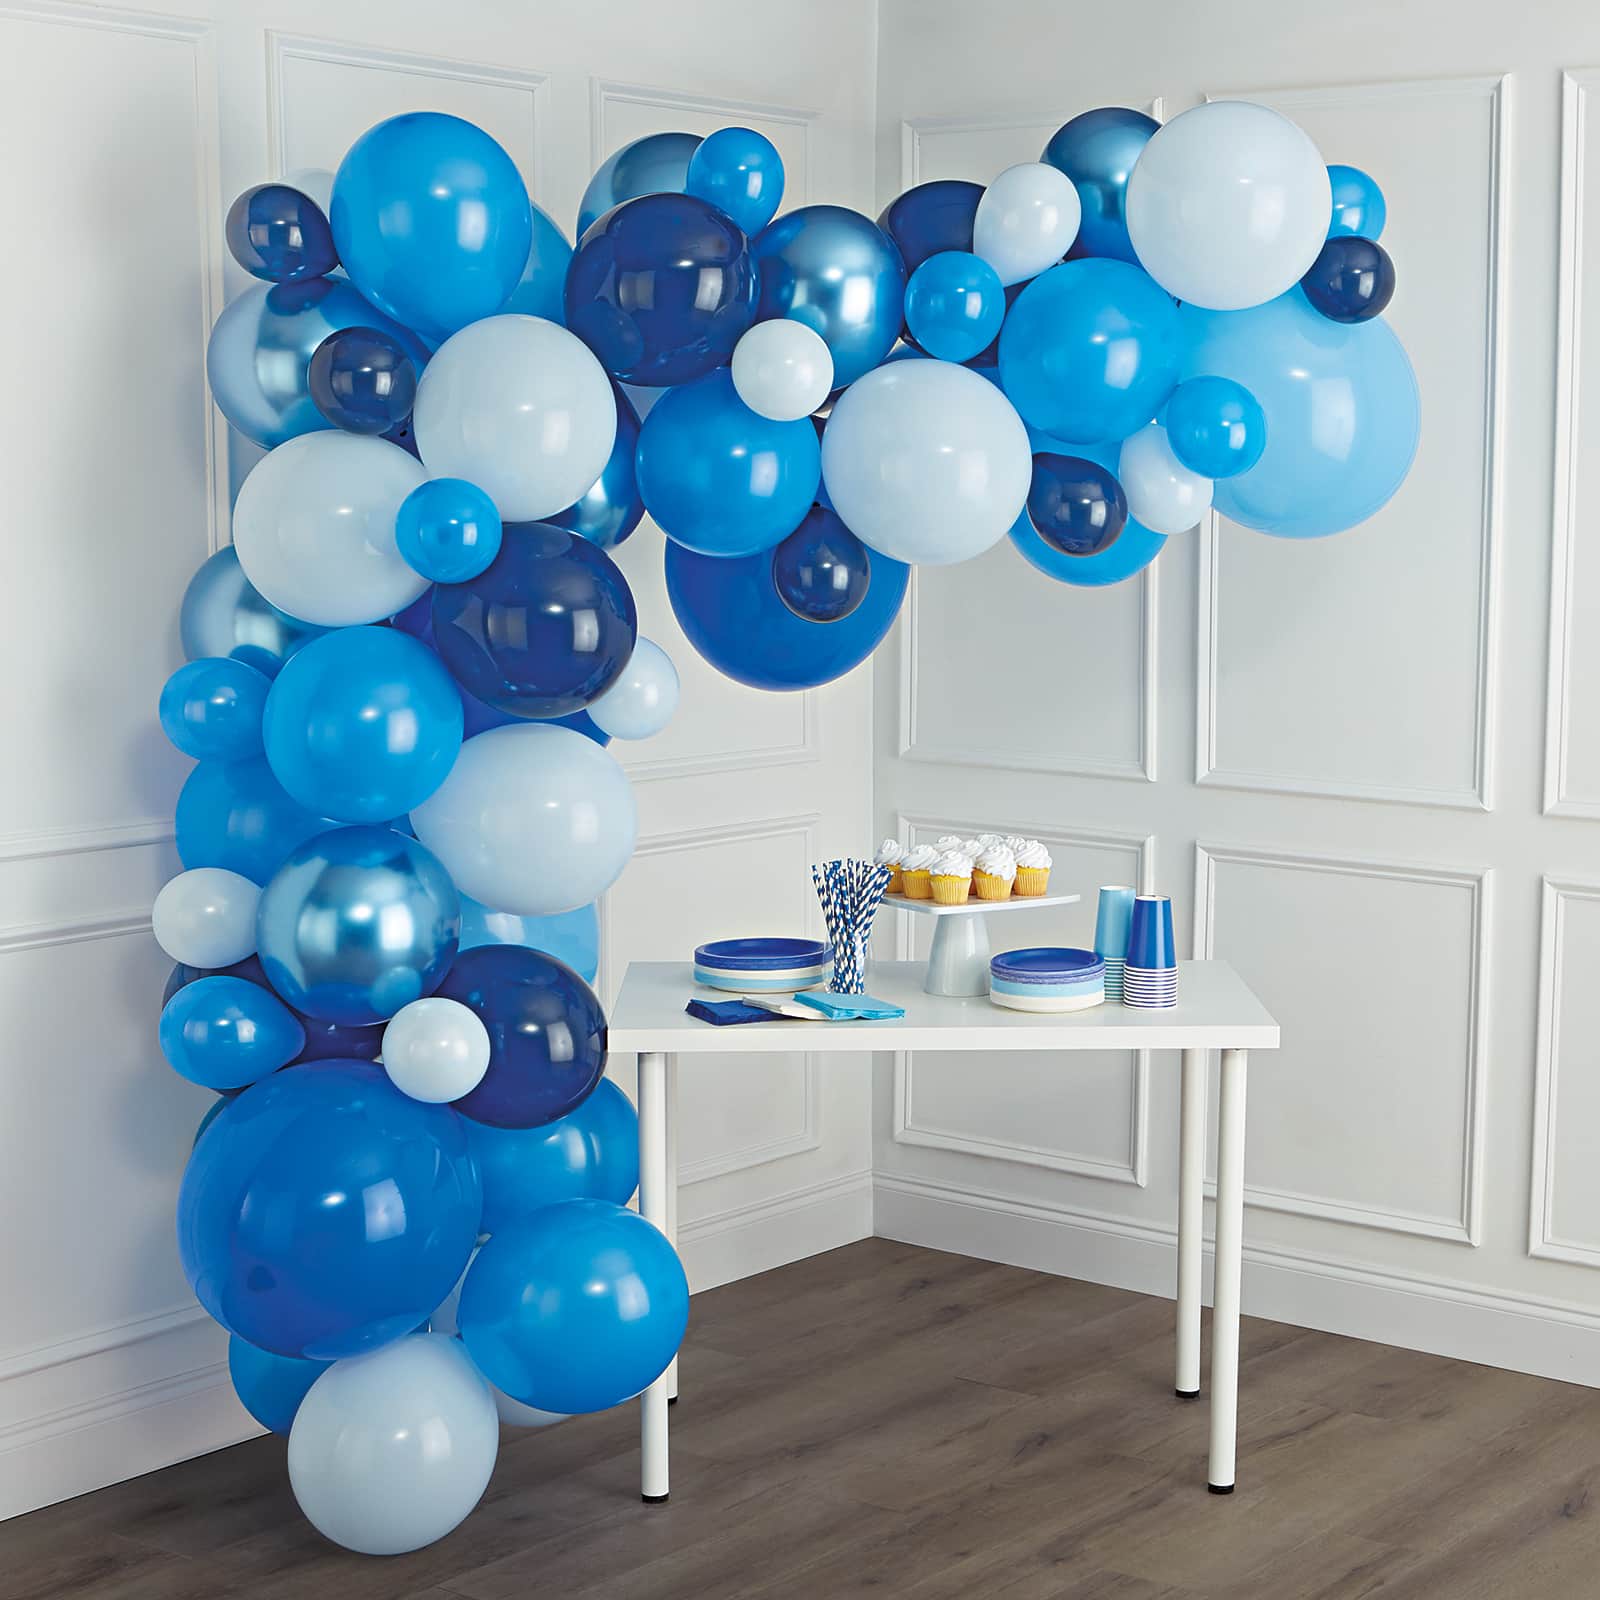 Large Balloon Bouquet: Dazzling Arrangement for Celebrations